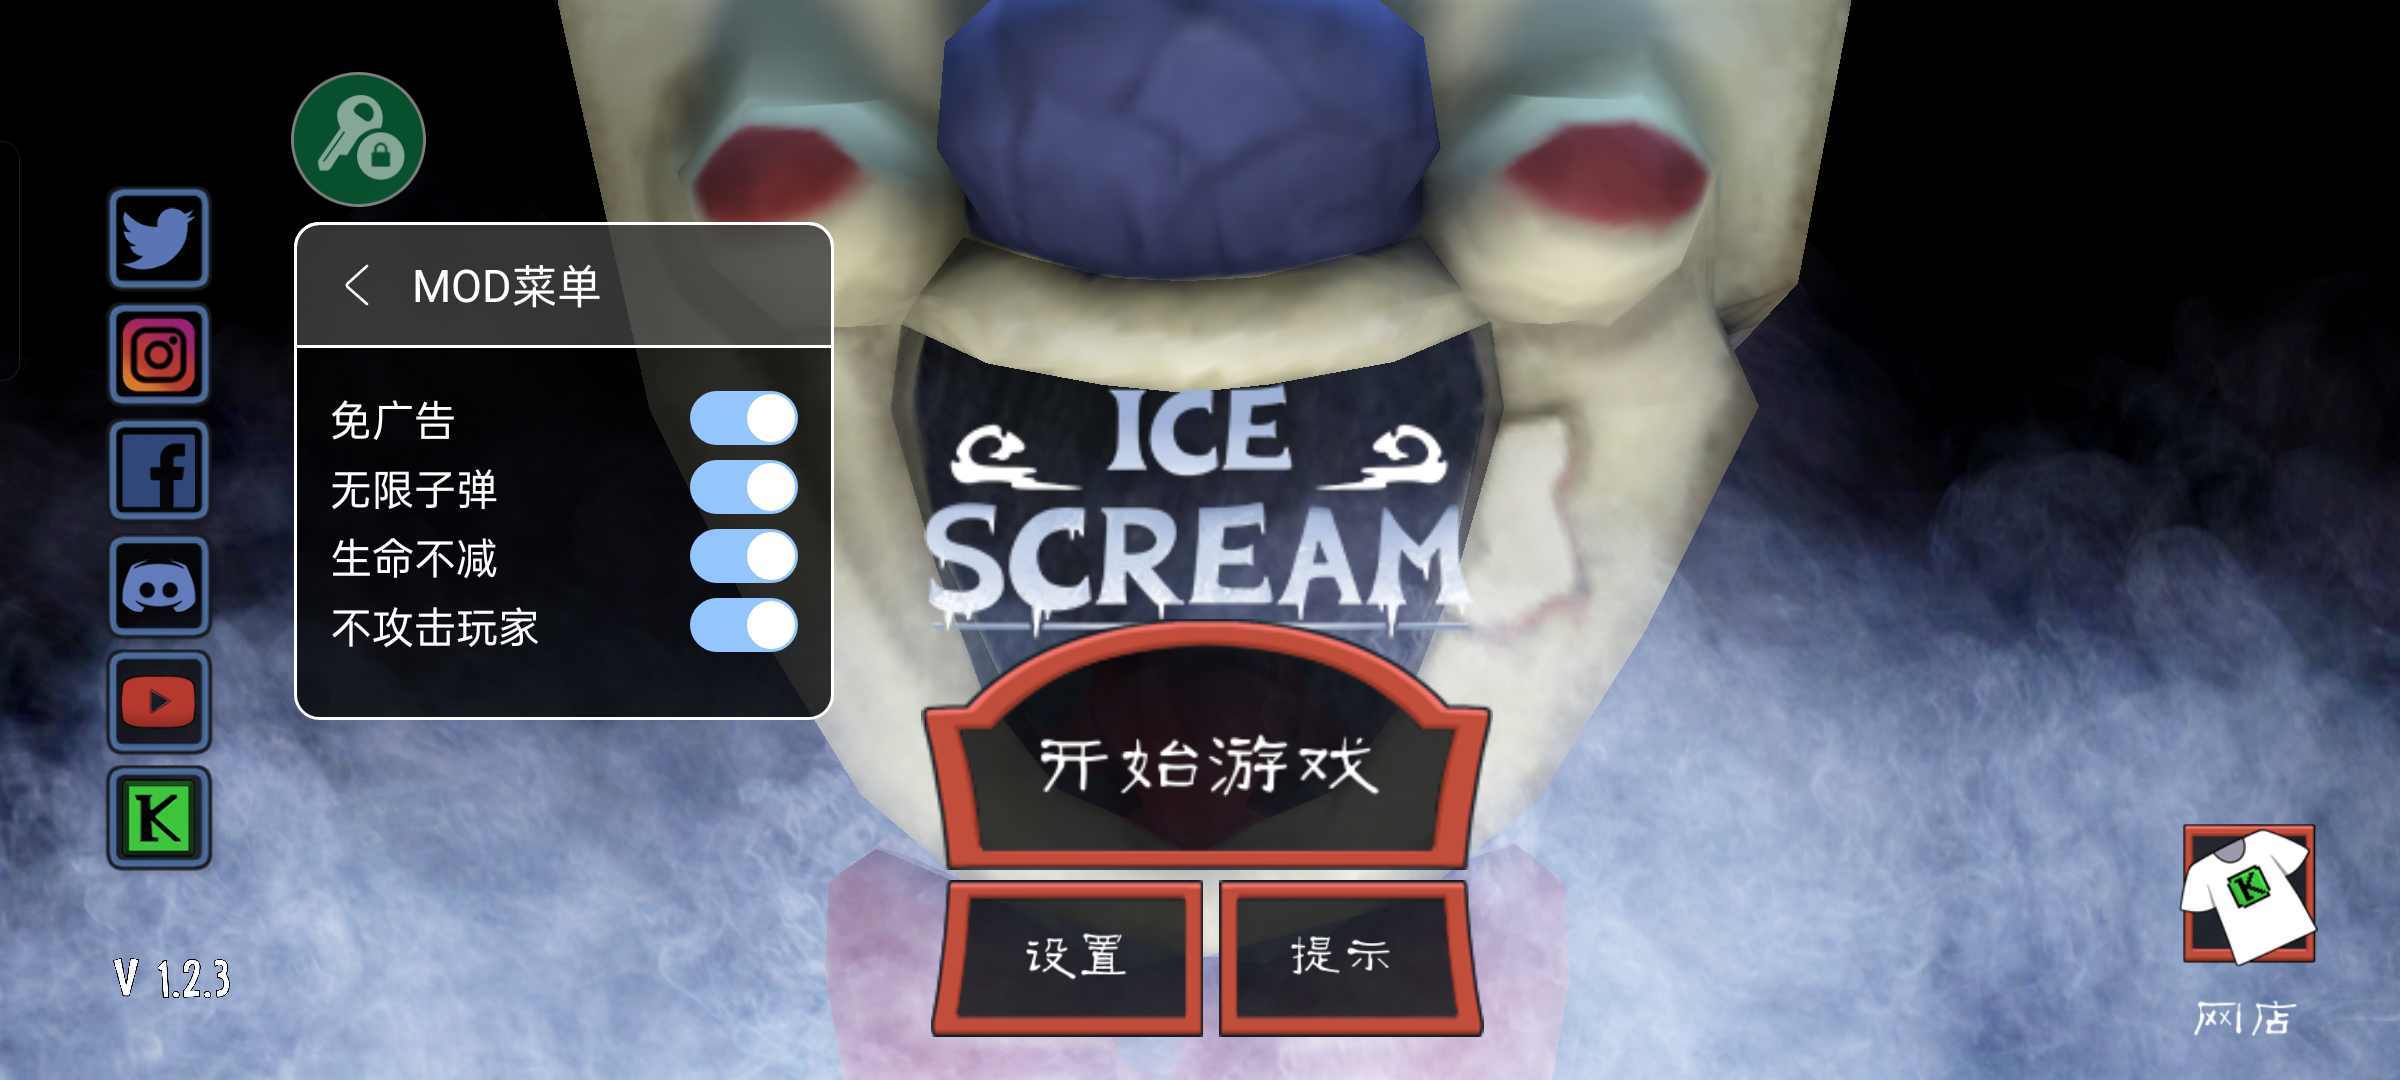 恐怖冰淇淋中文开挂版